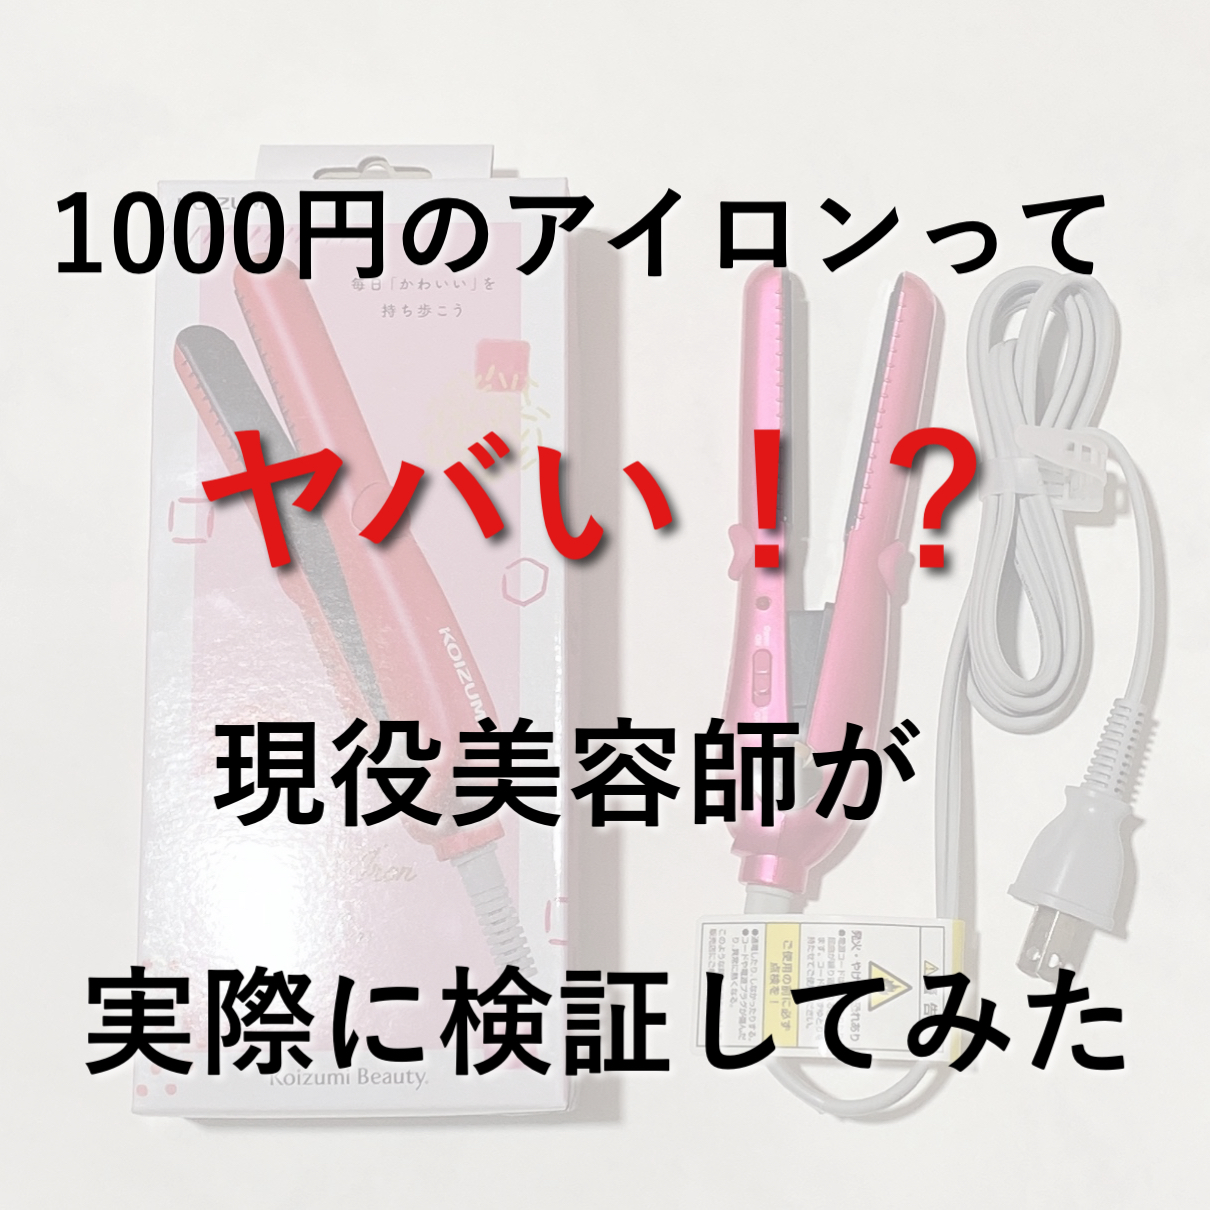 ドンキのミニヘアアイロンが1000円 実際どうなのかを美容師が検証 Kireiii